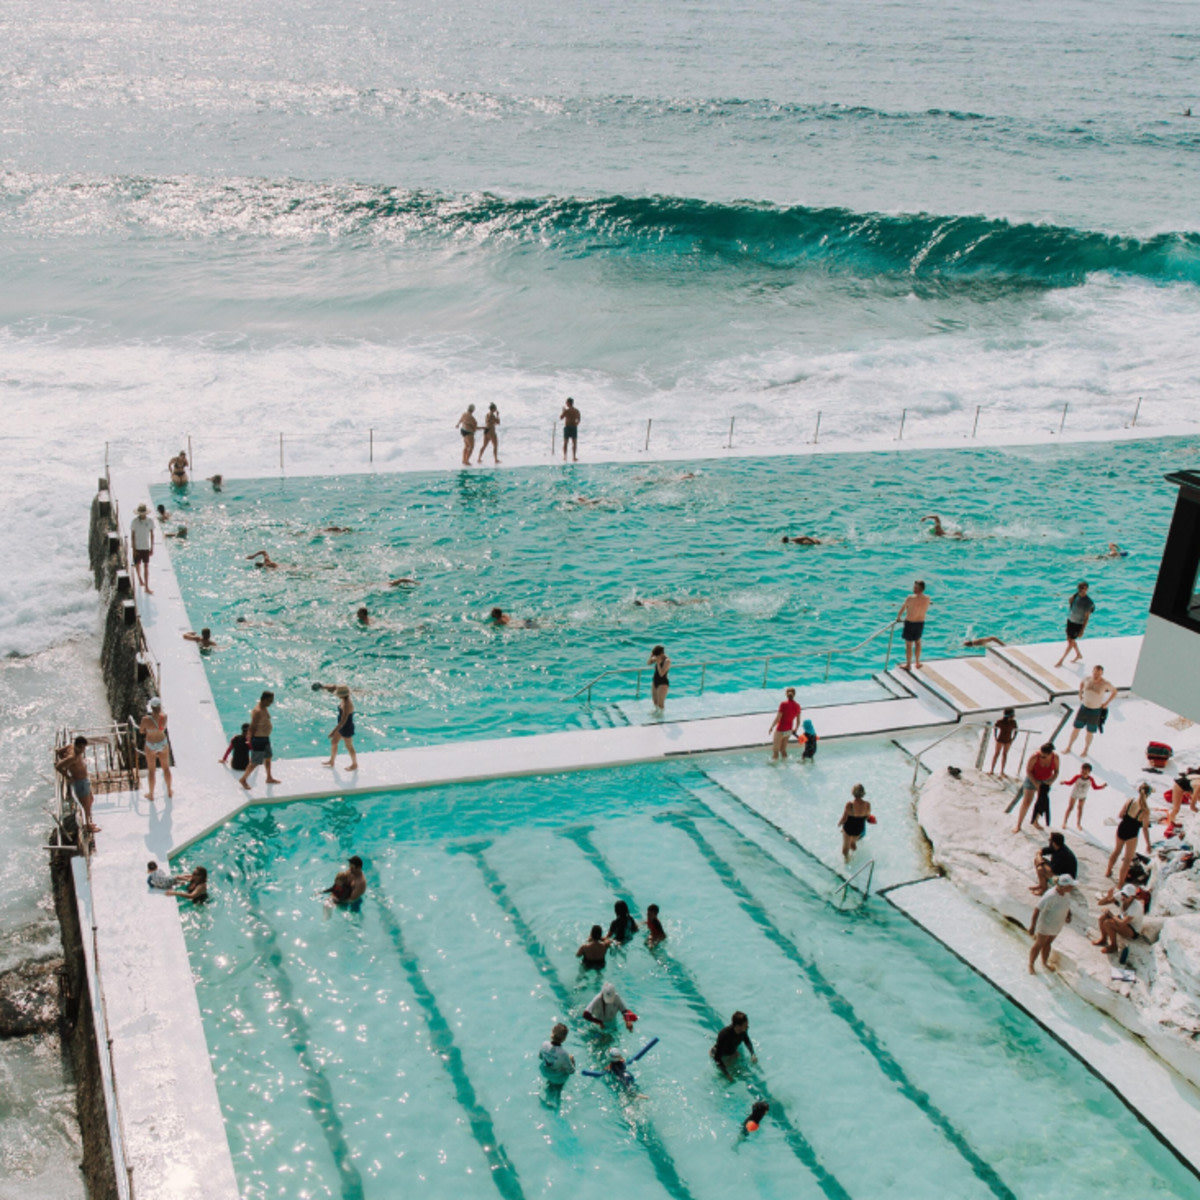 People in pool and ocean. 